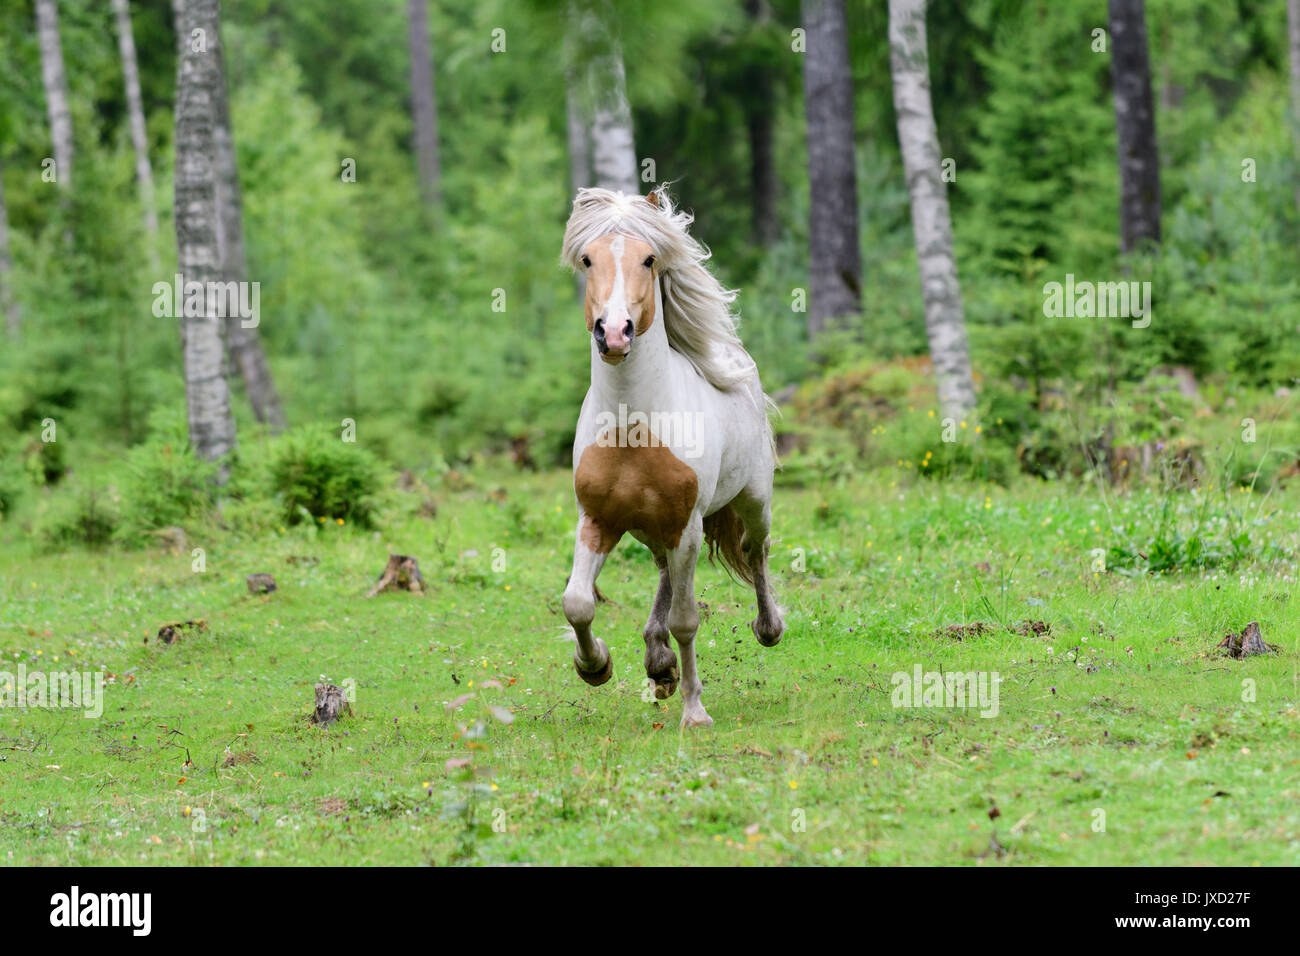 Running Icelandic horse in birch forest in Sweden Stock Photo